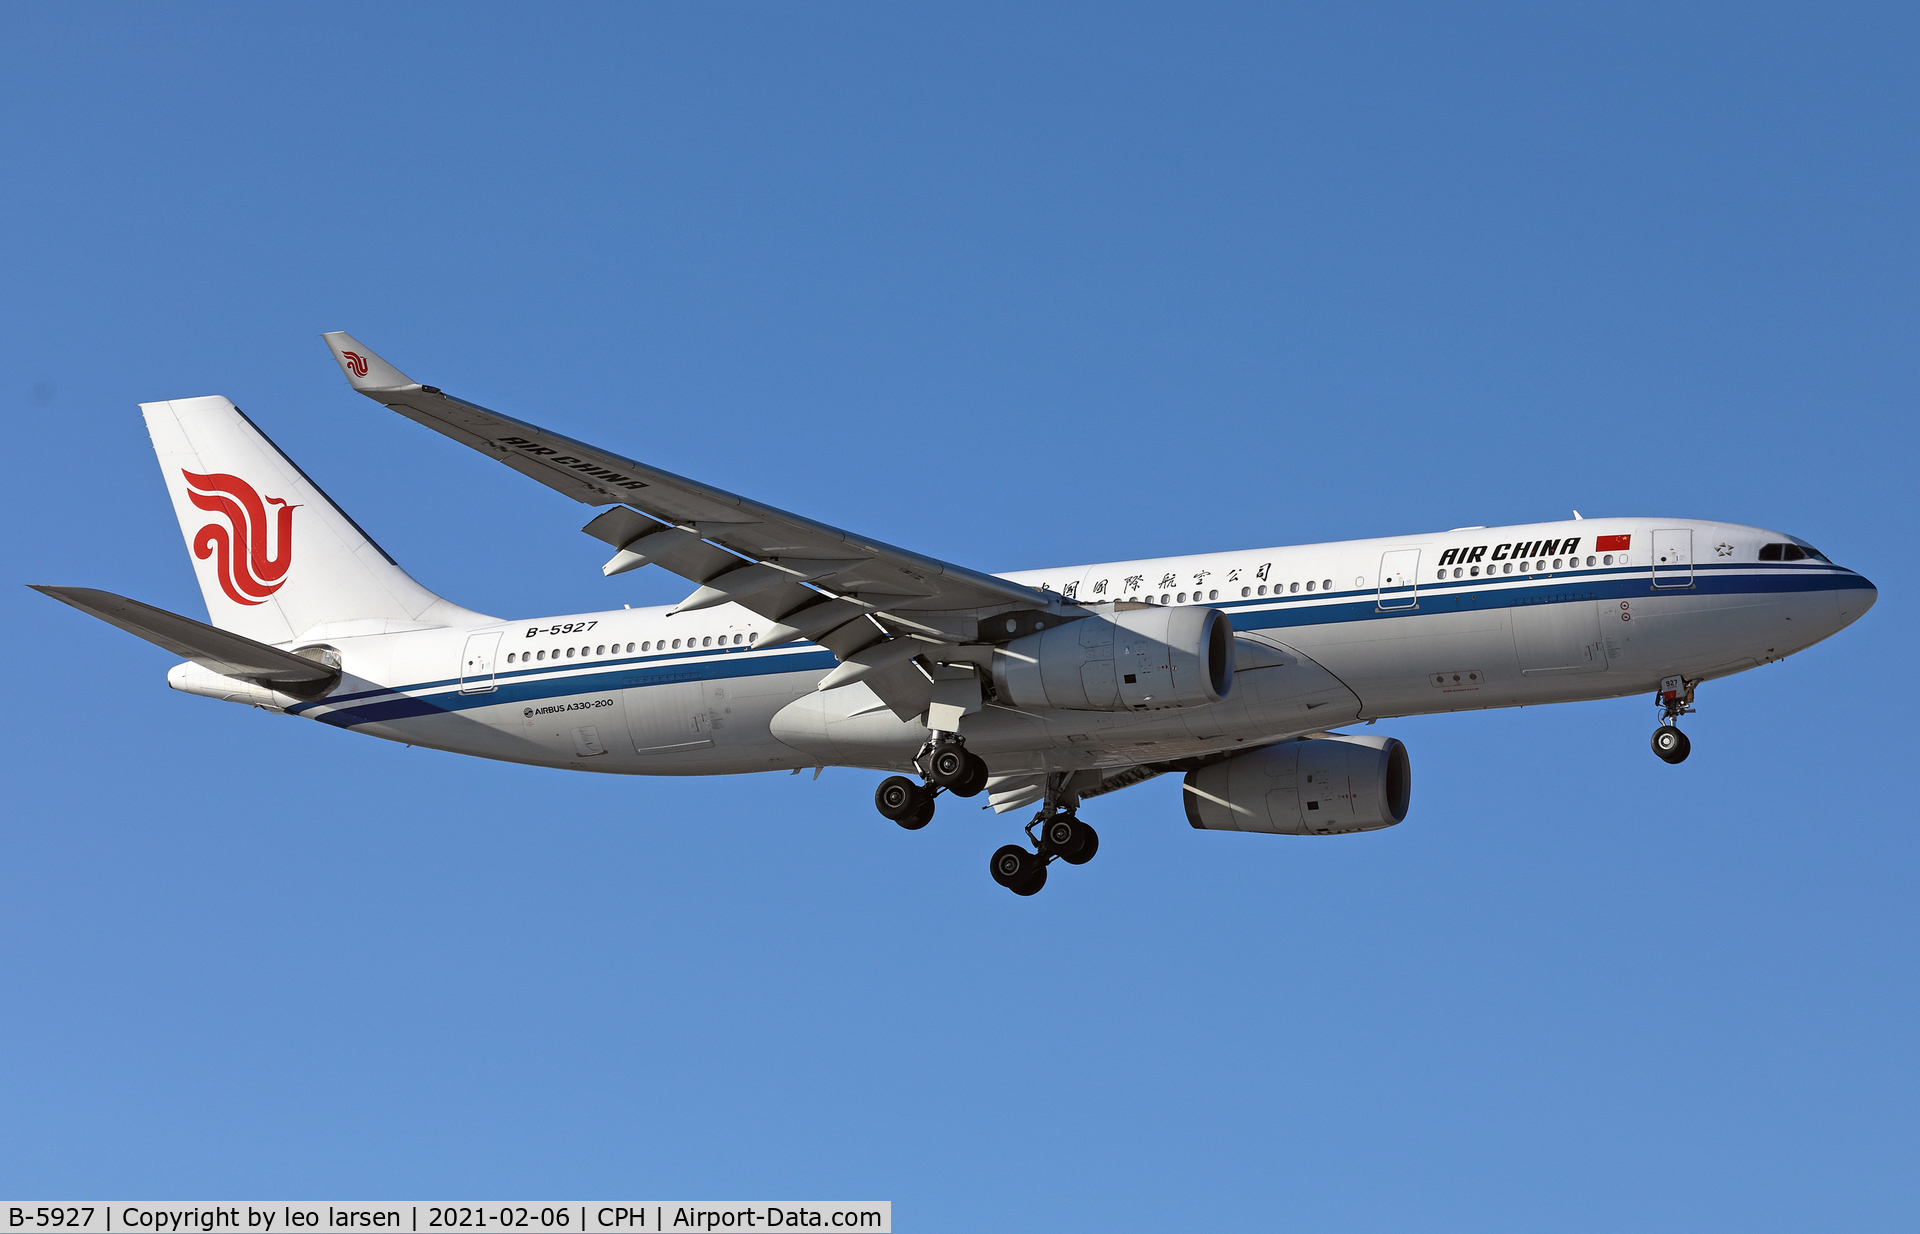 B-5927, 2013 Airbus A330-243 C/N 1444, Copenhagen 6.2.2021